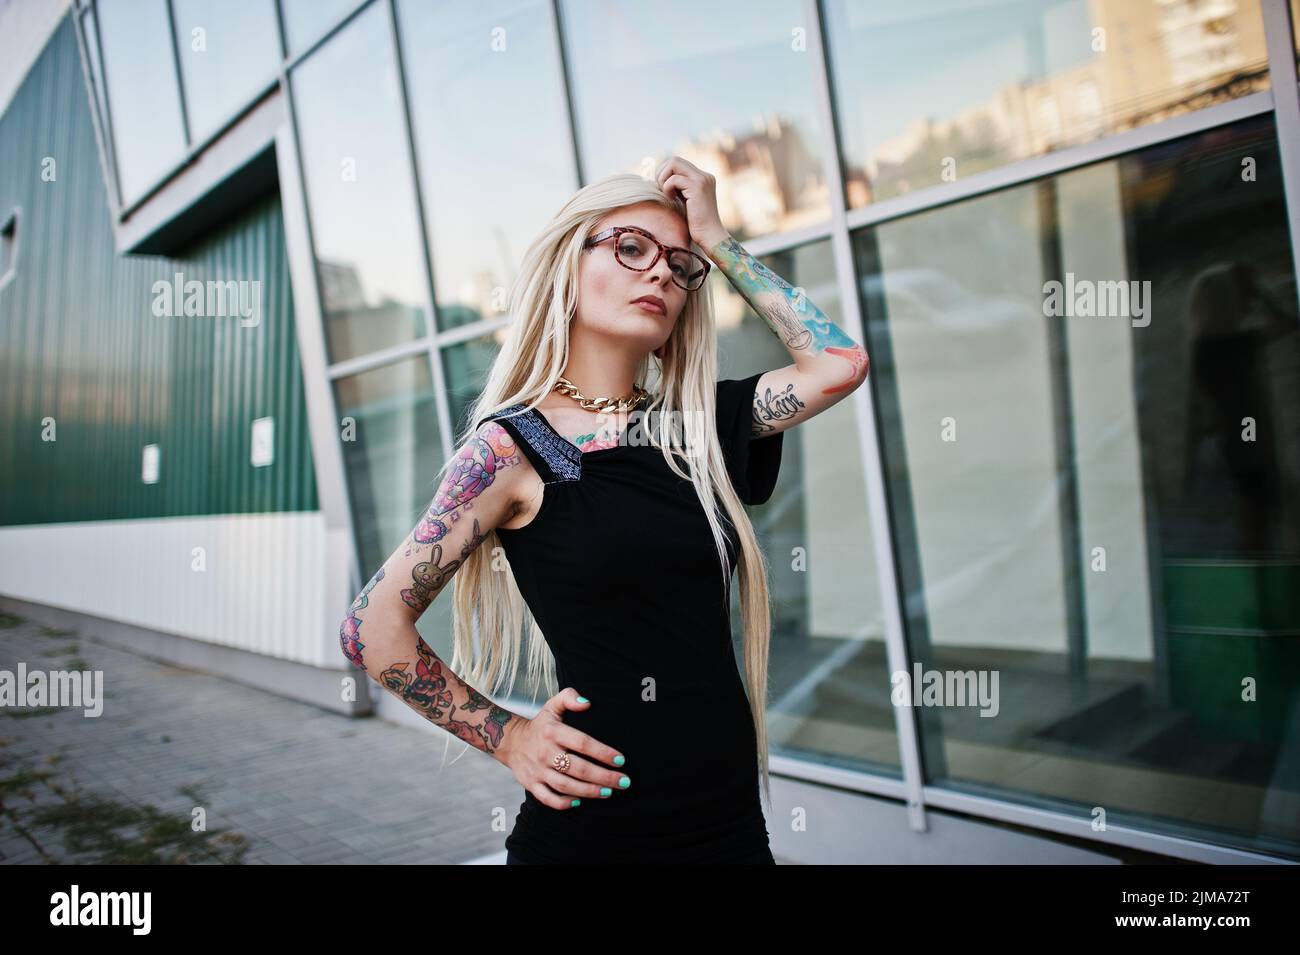 Jeune blonde tattoo girl historique haut-tech architecture windows Banque D'Images